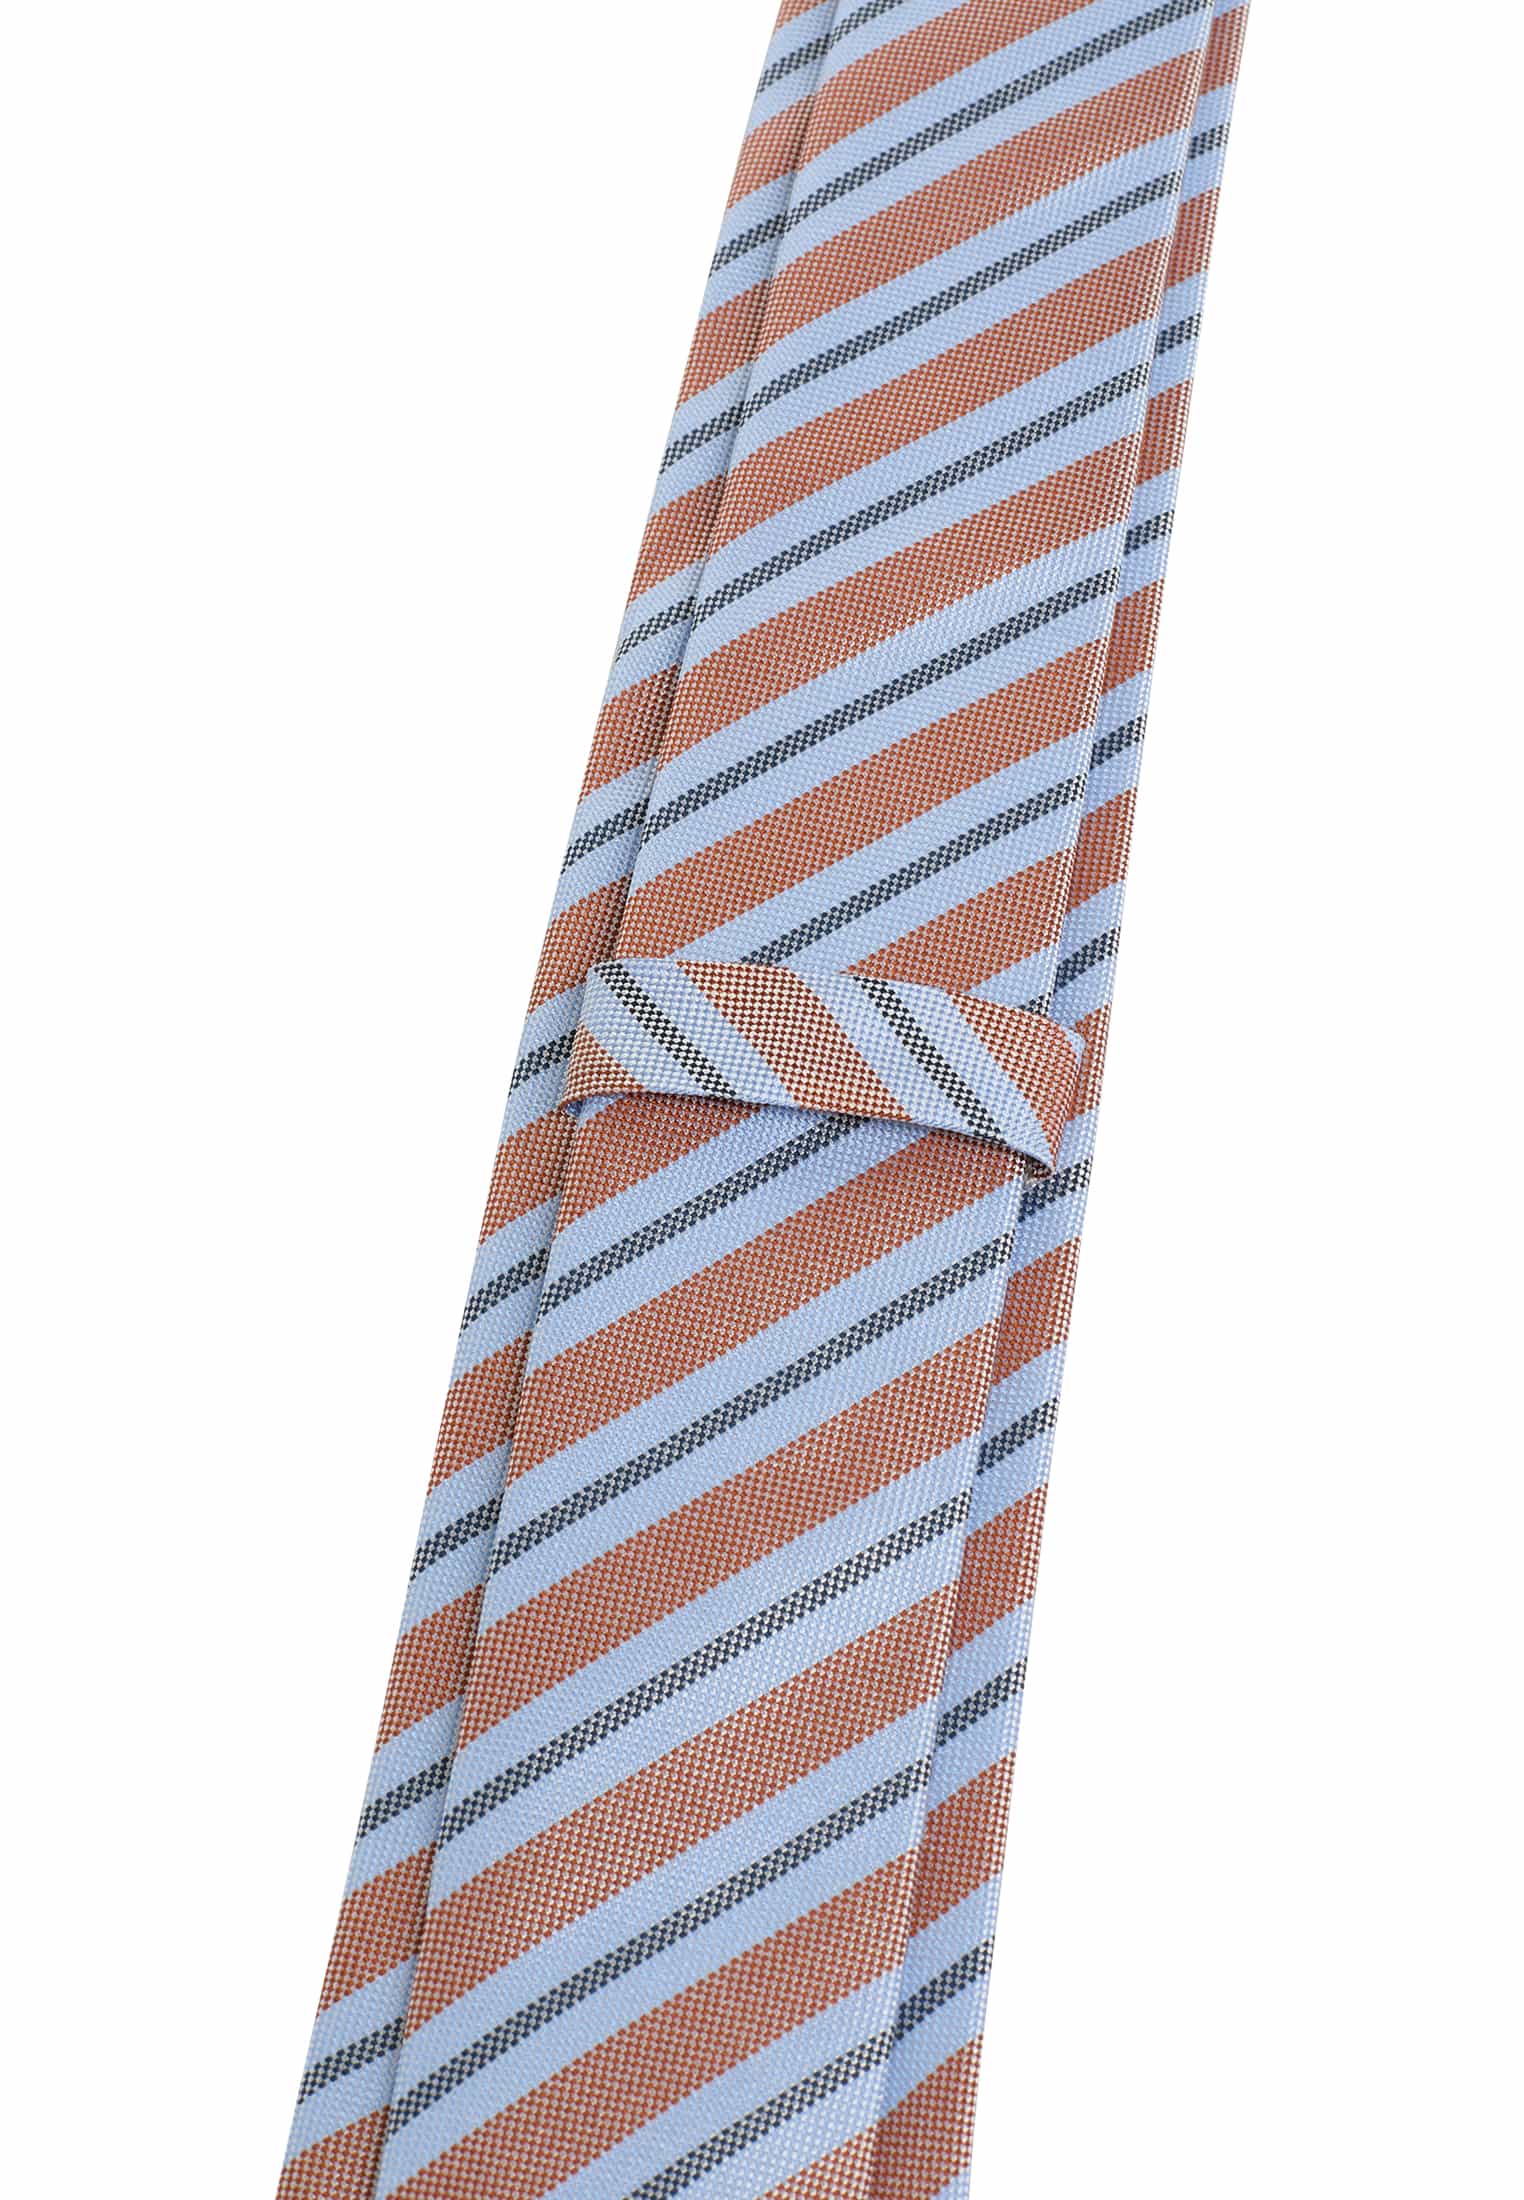 142 | hellblau/orange 1AC02000-81-33-142 Krawatte gestreift hellblau/orange in | |